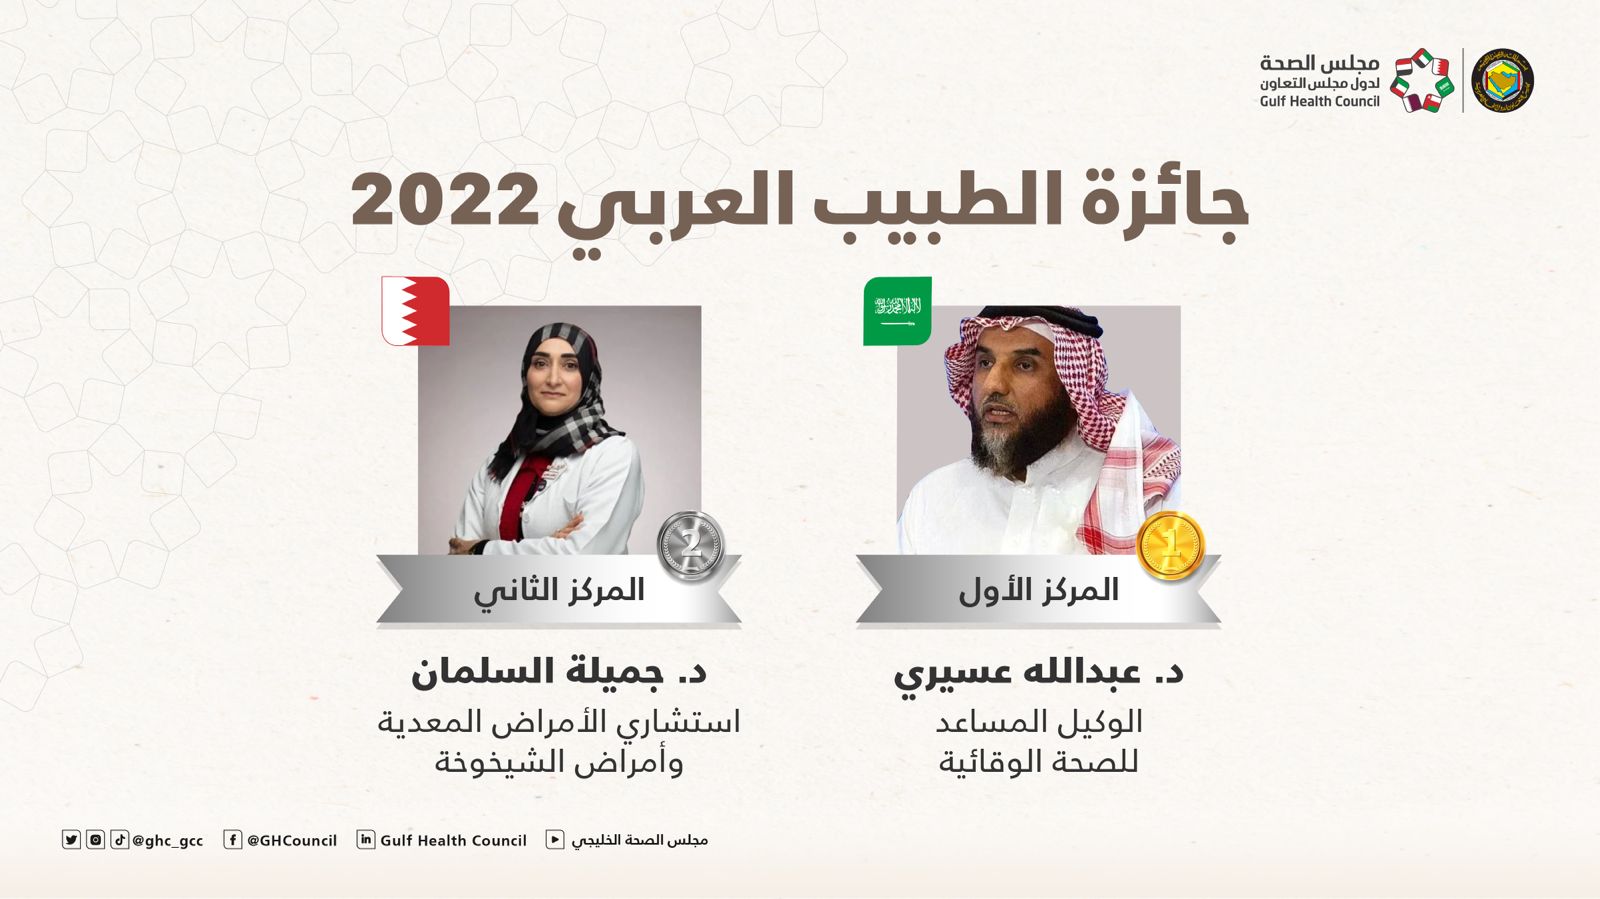 مجلس الصحة الخليجي يهنئ عسيري والسلمان بحصولهم على جائزة الطبيب العربي